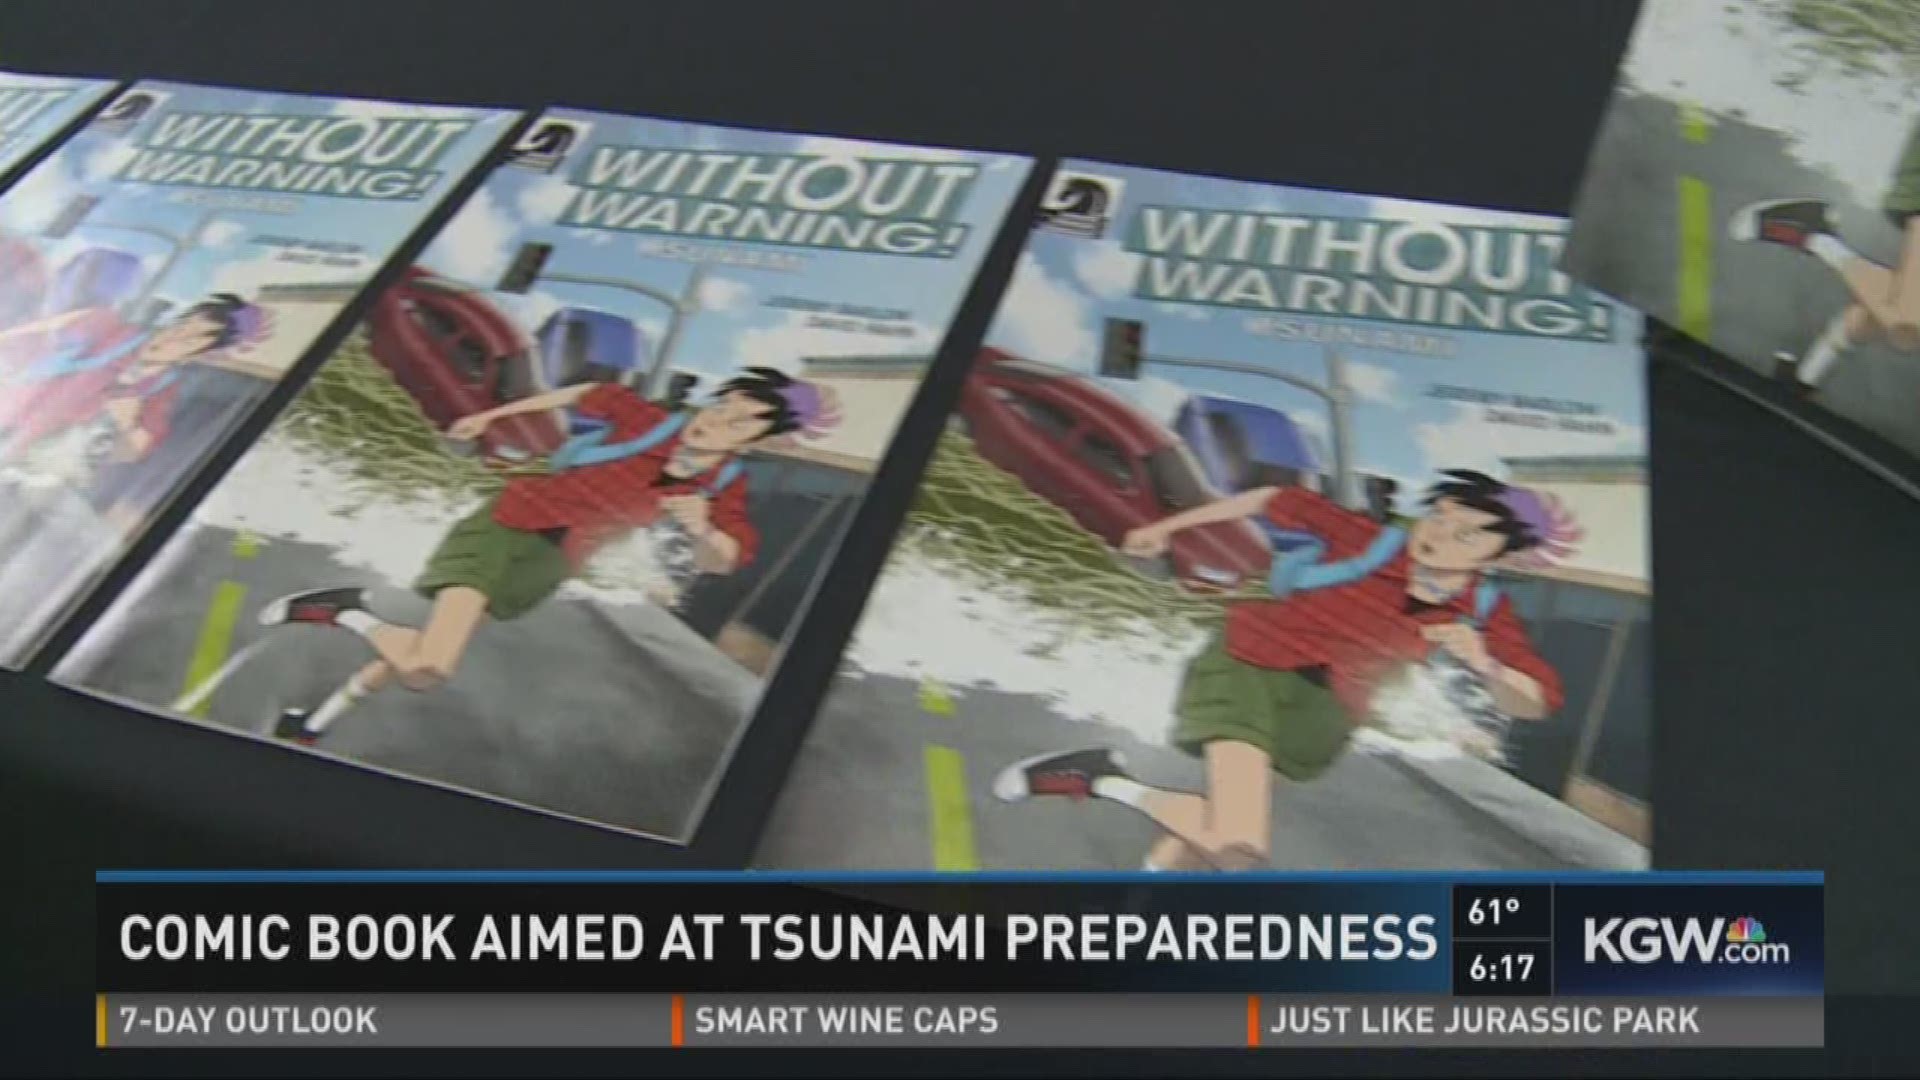 Comic book aimed at tsunami preparedness